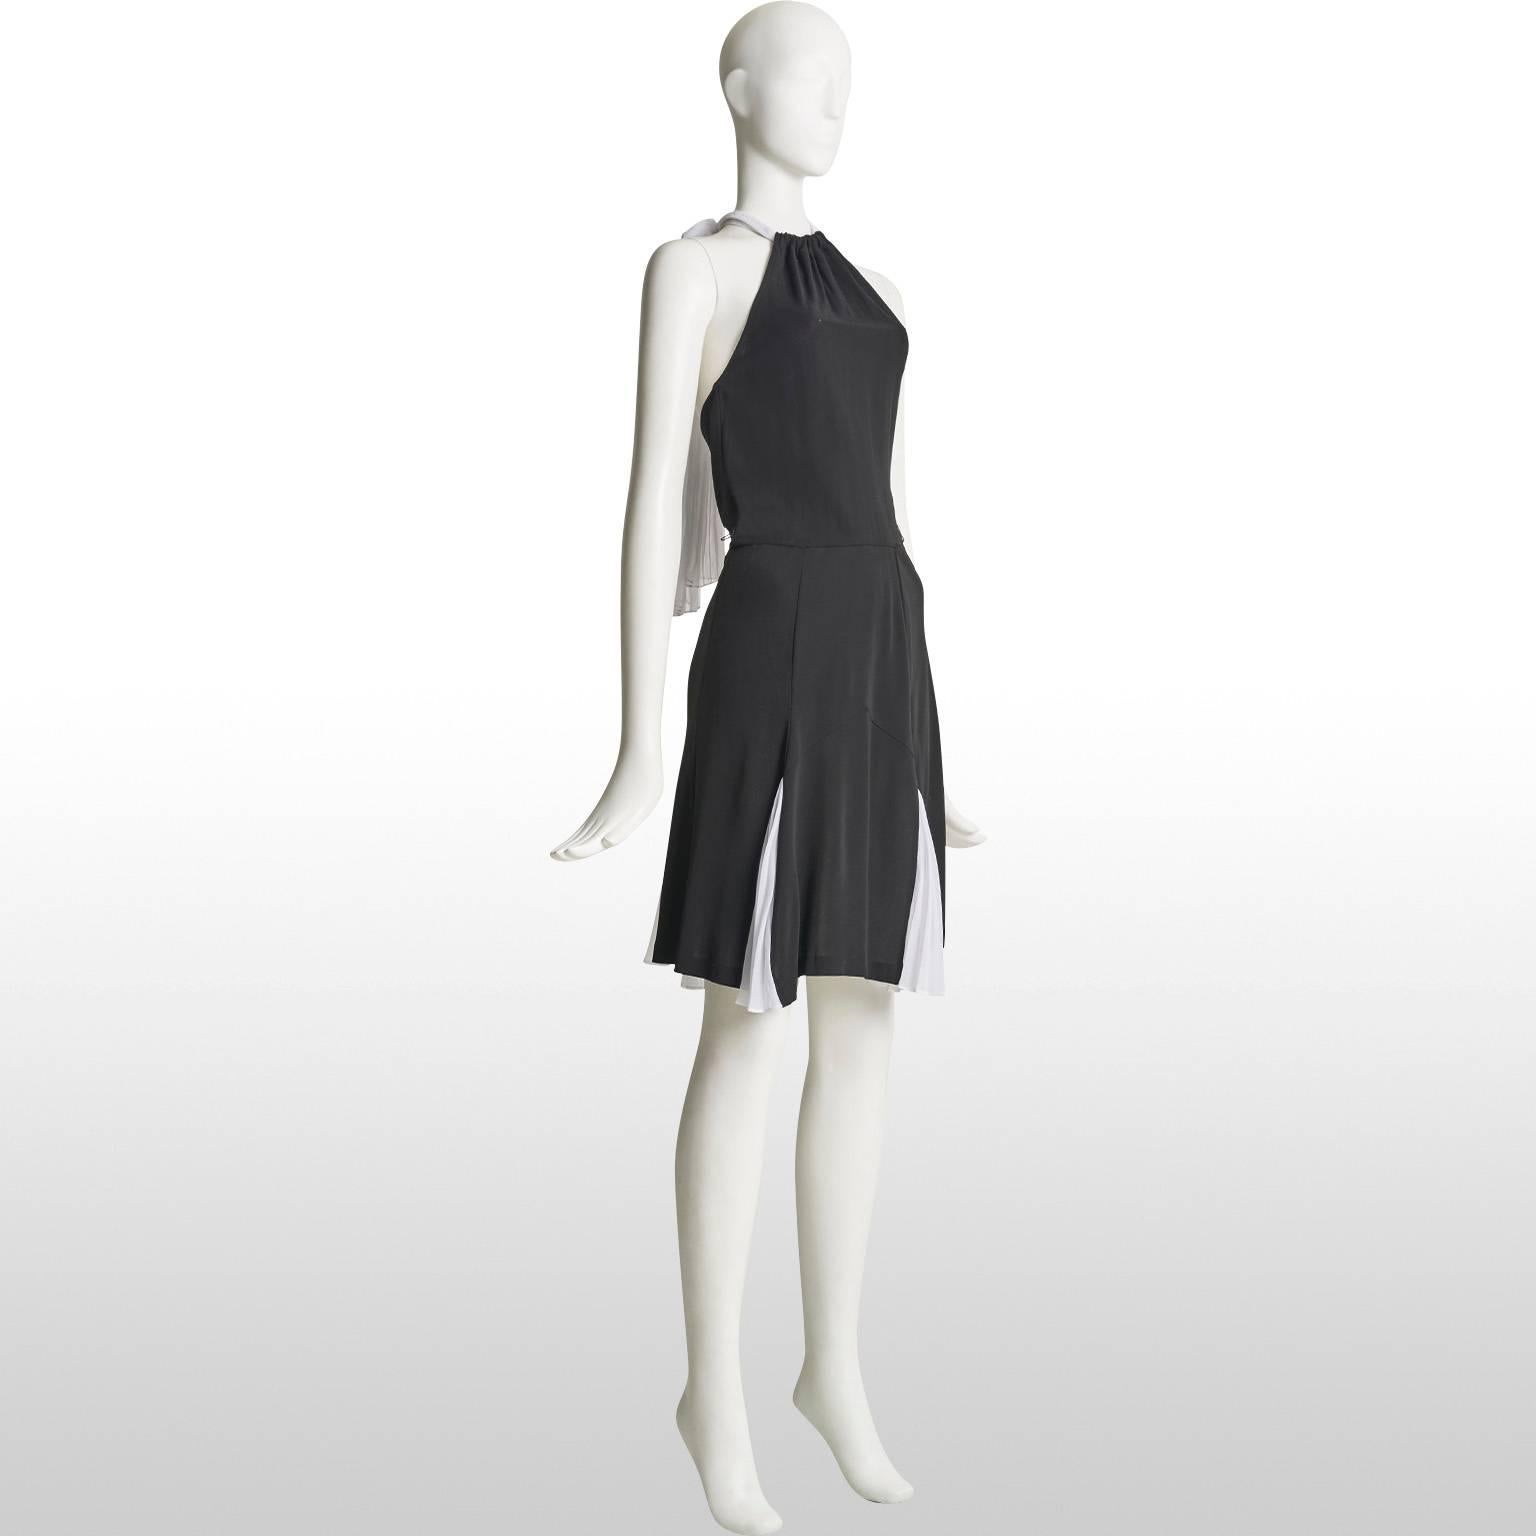  Diane Von Furstenberg Black and White Halter Neck Dress  For Sale 1